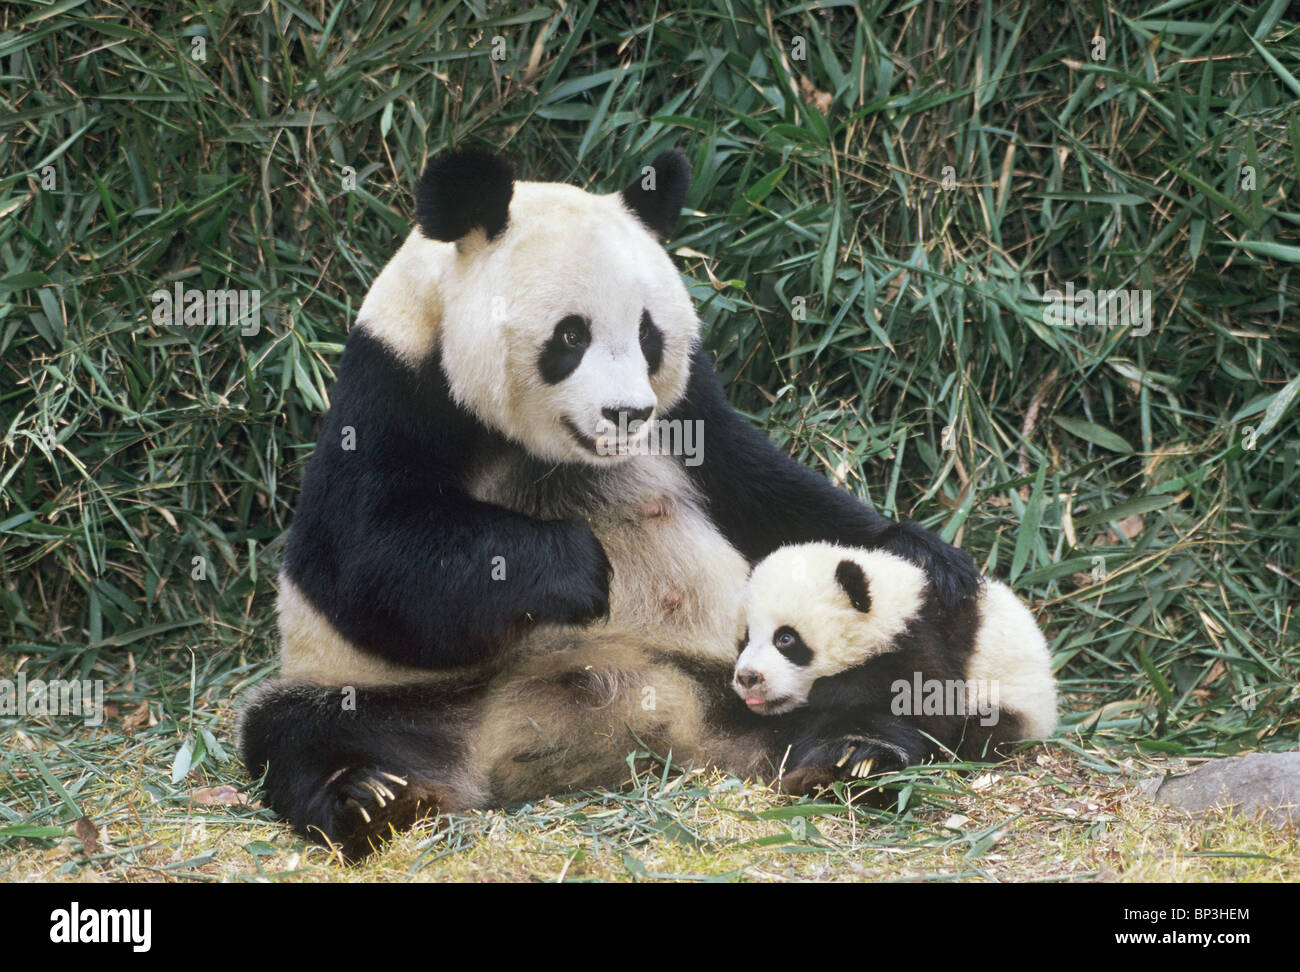 Panda gigante madre con 5 meses de edad, Wolong en China Foto de stock